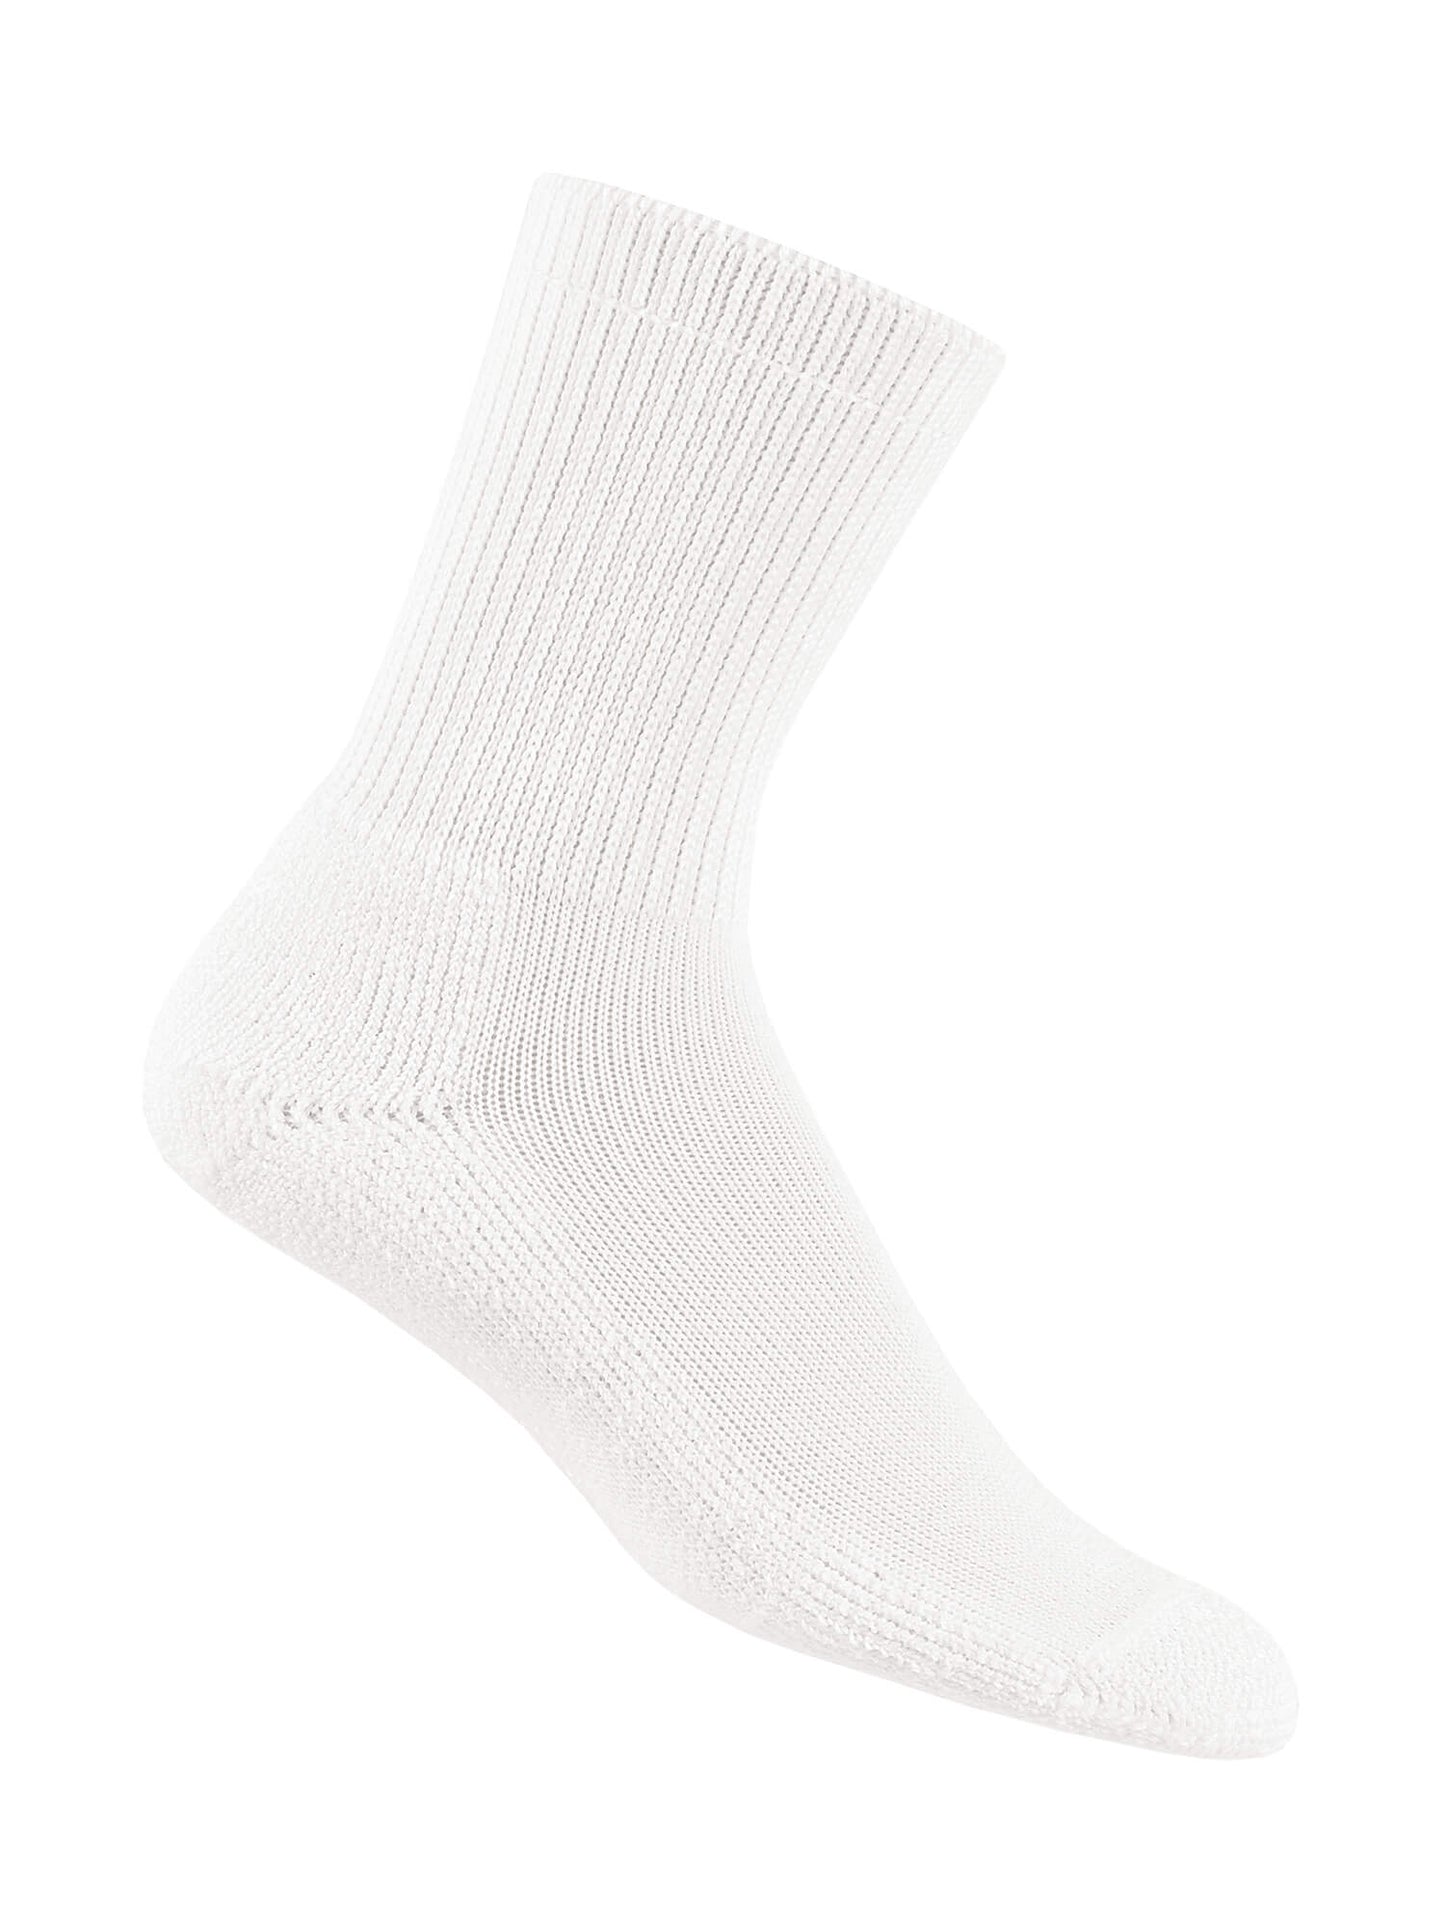 Thorlos Men's Crew Advanced Diabetic Socks in White